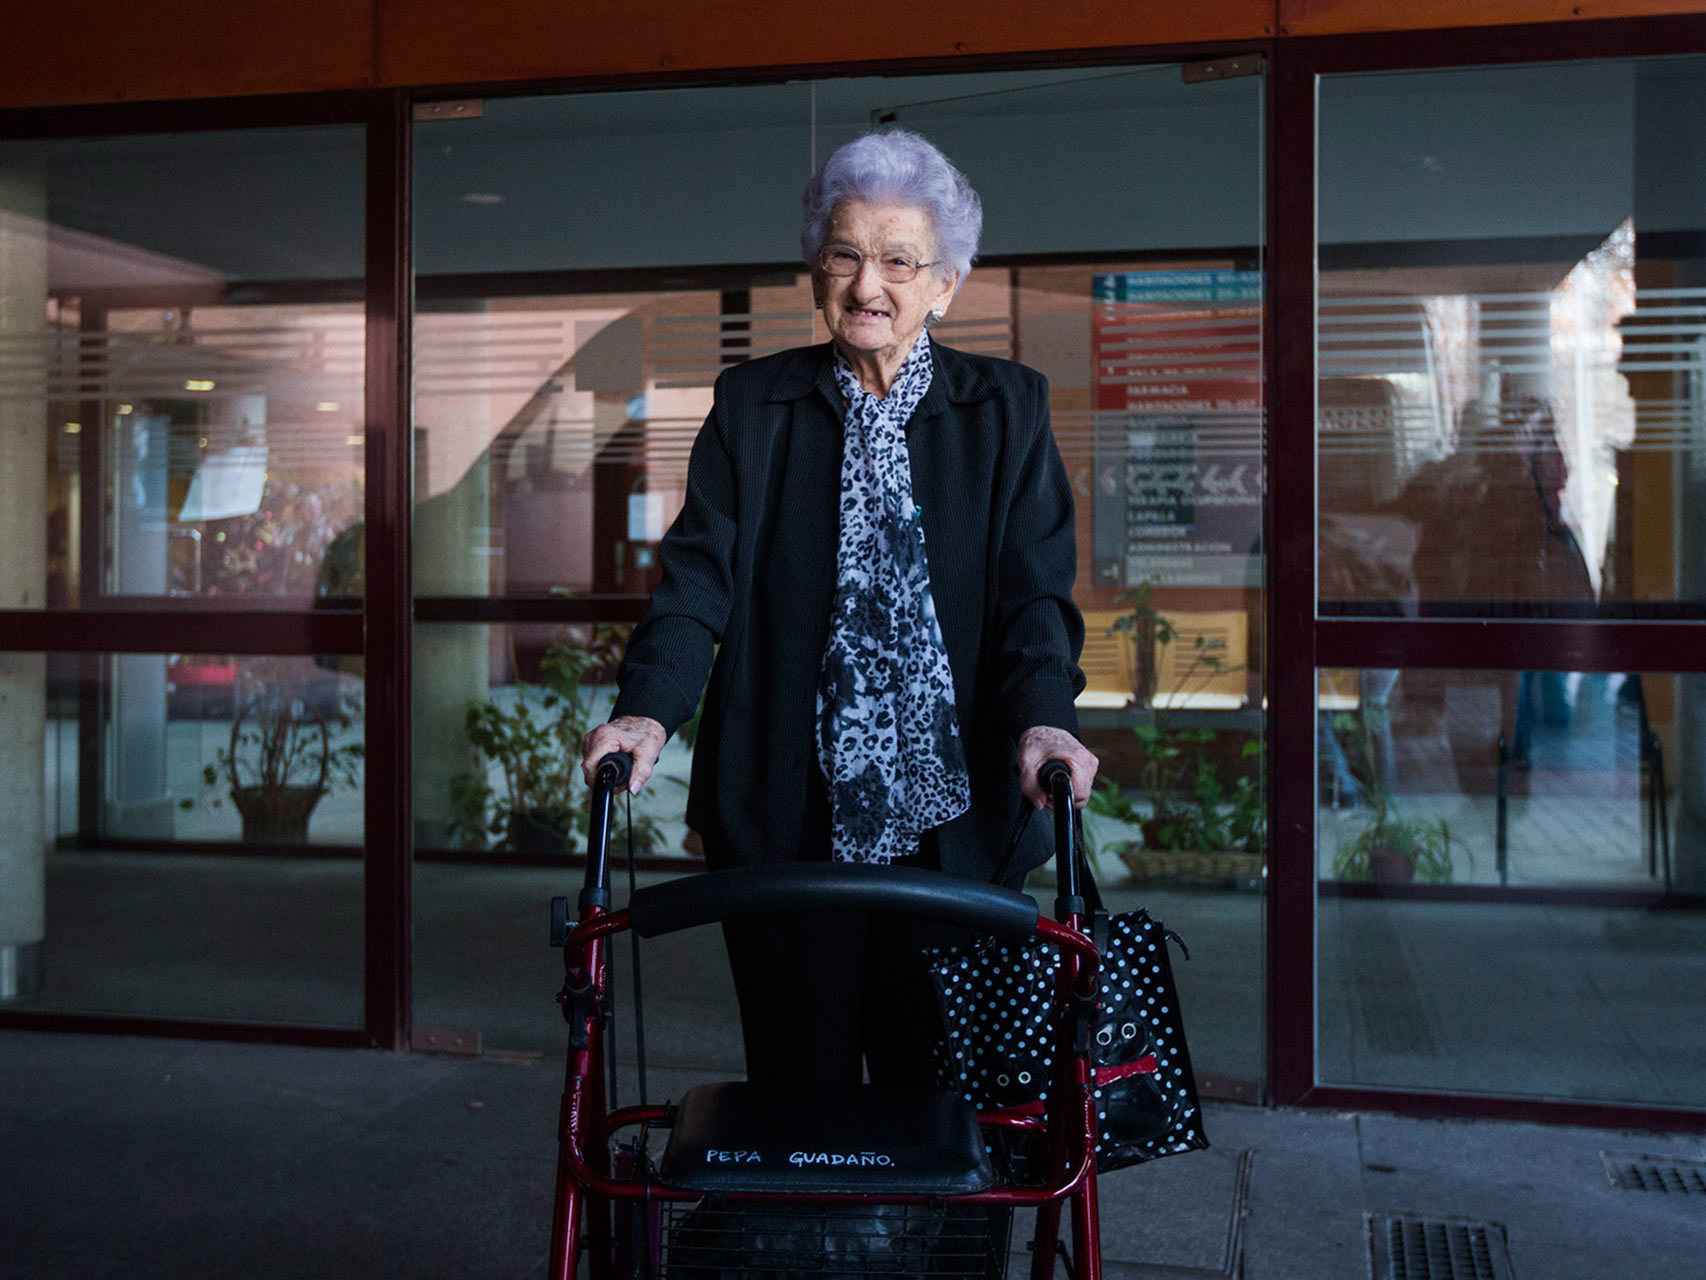 Pepa, a sus 92 años, llevaba tres décimos de El Gordo de la Lotería de Navidad